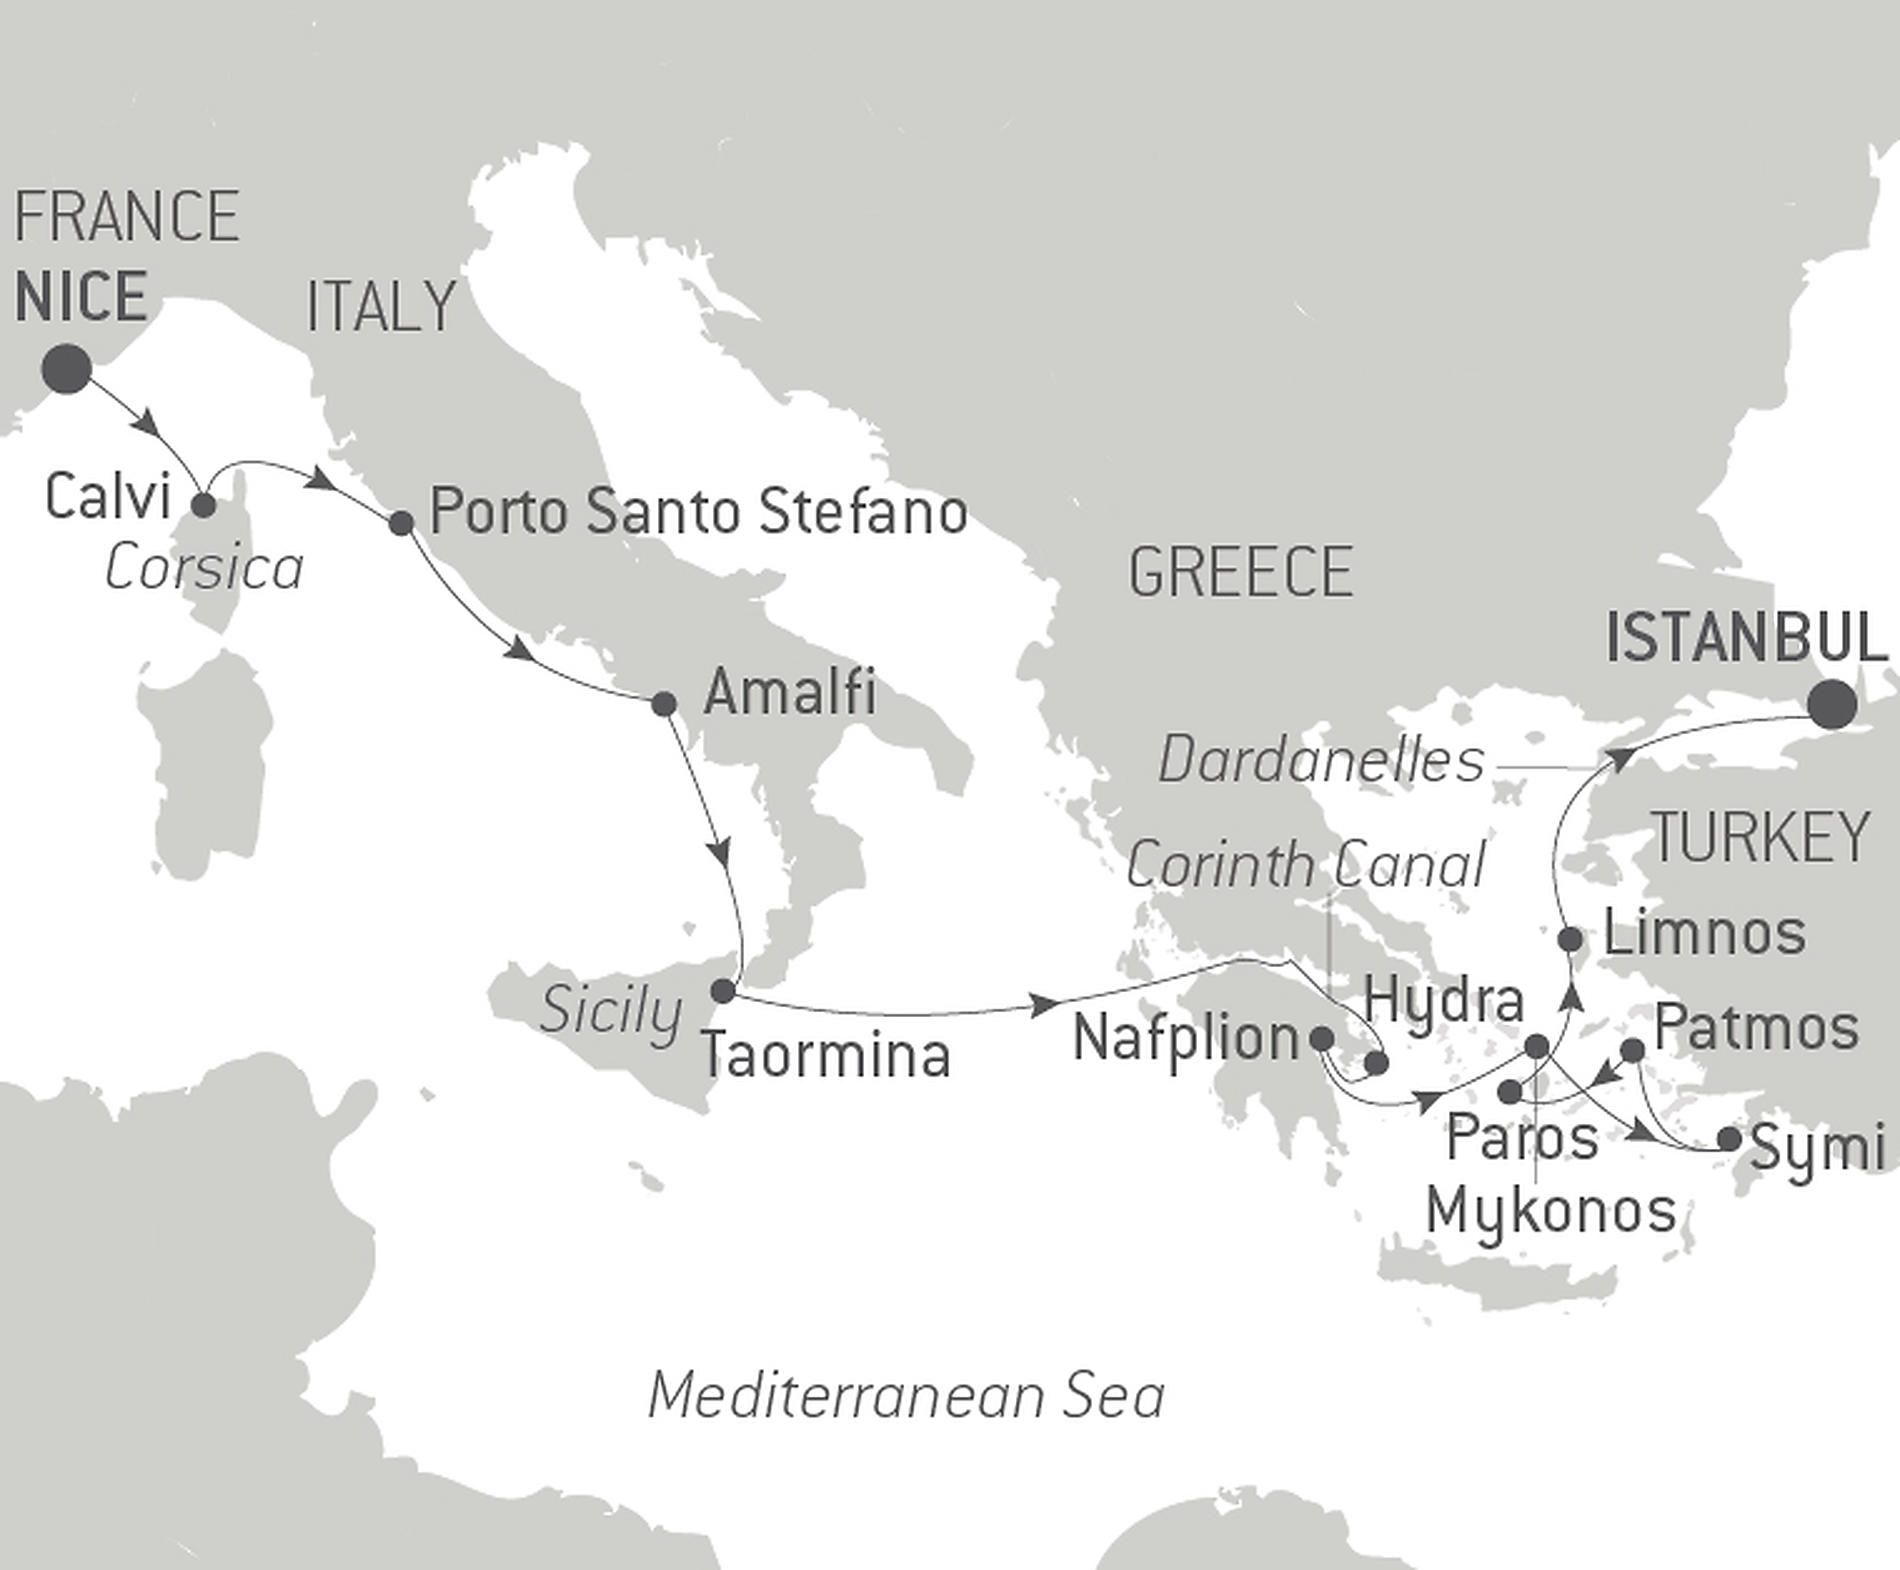 Mediterranean Odyssey